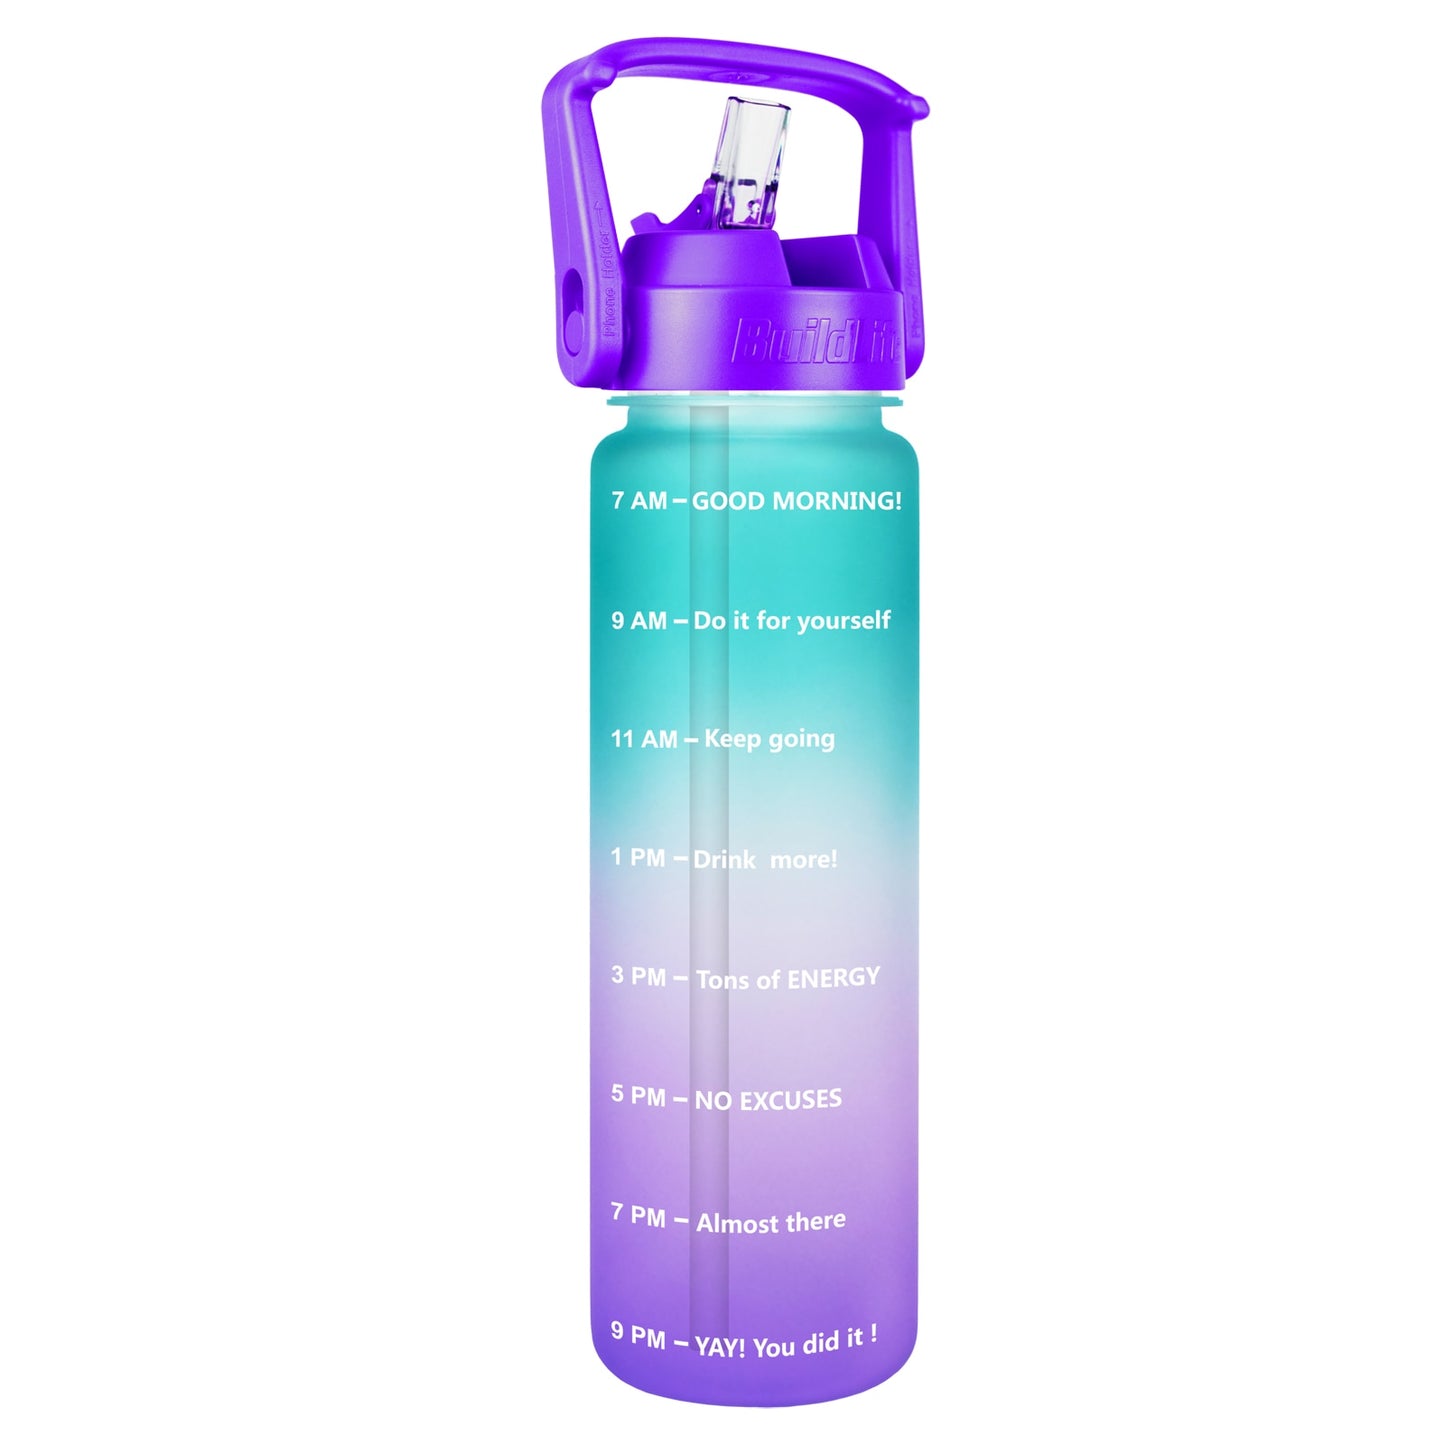 Eine Sporttrinkflasche mit einem Farbverlauf von Gruen zu Violett, ausgestattet mit einem grossen Henkel und mit Zeitmarkierungen zur Fluessigkeitsueberwachung. Unten ist das Markenlogo "QuiFit" zu sehen.